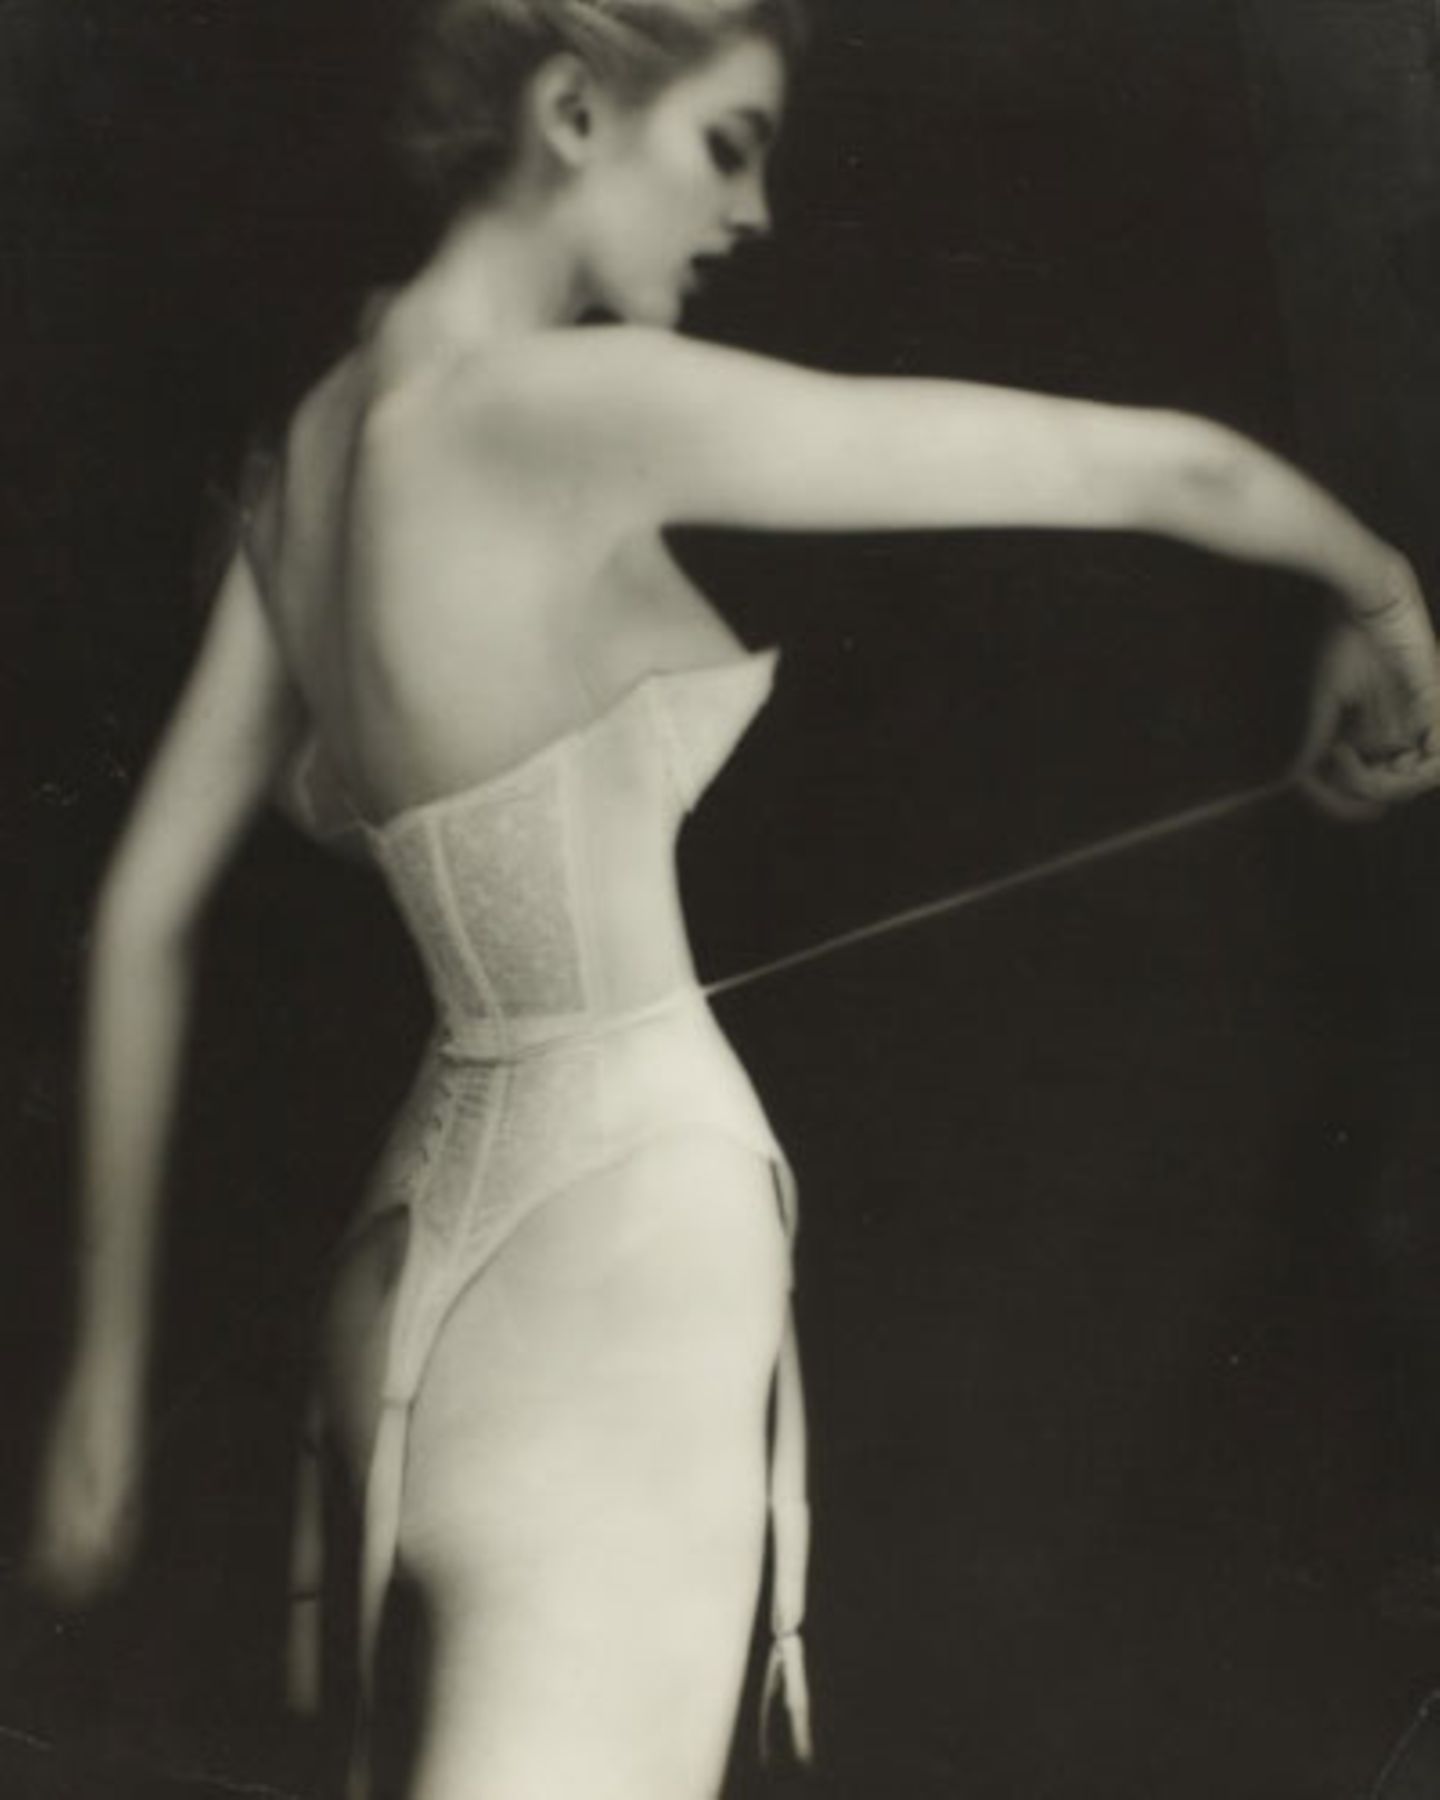 Von 1946 bis 1949 arbeitete Lillian Bassman als Art Director beim Jugendableger des weltberühmten Modemagazins "Harper's Bazaar", förderte die Karriere von Ausnahmefotografen wie Richard Avedon und Robert Frank. Ab 1949 wurde sie selbst Fotografin für "Harper's Bazaar" und andere Medien.